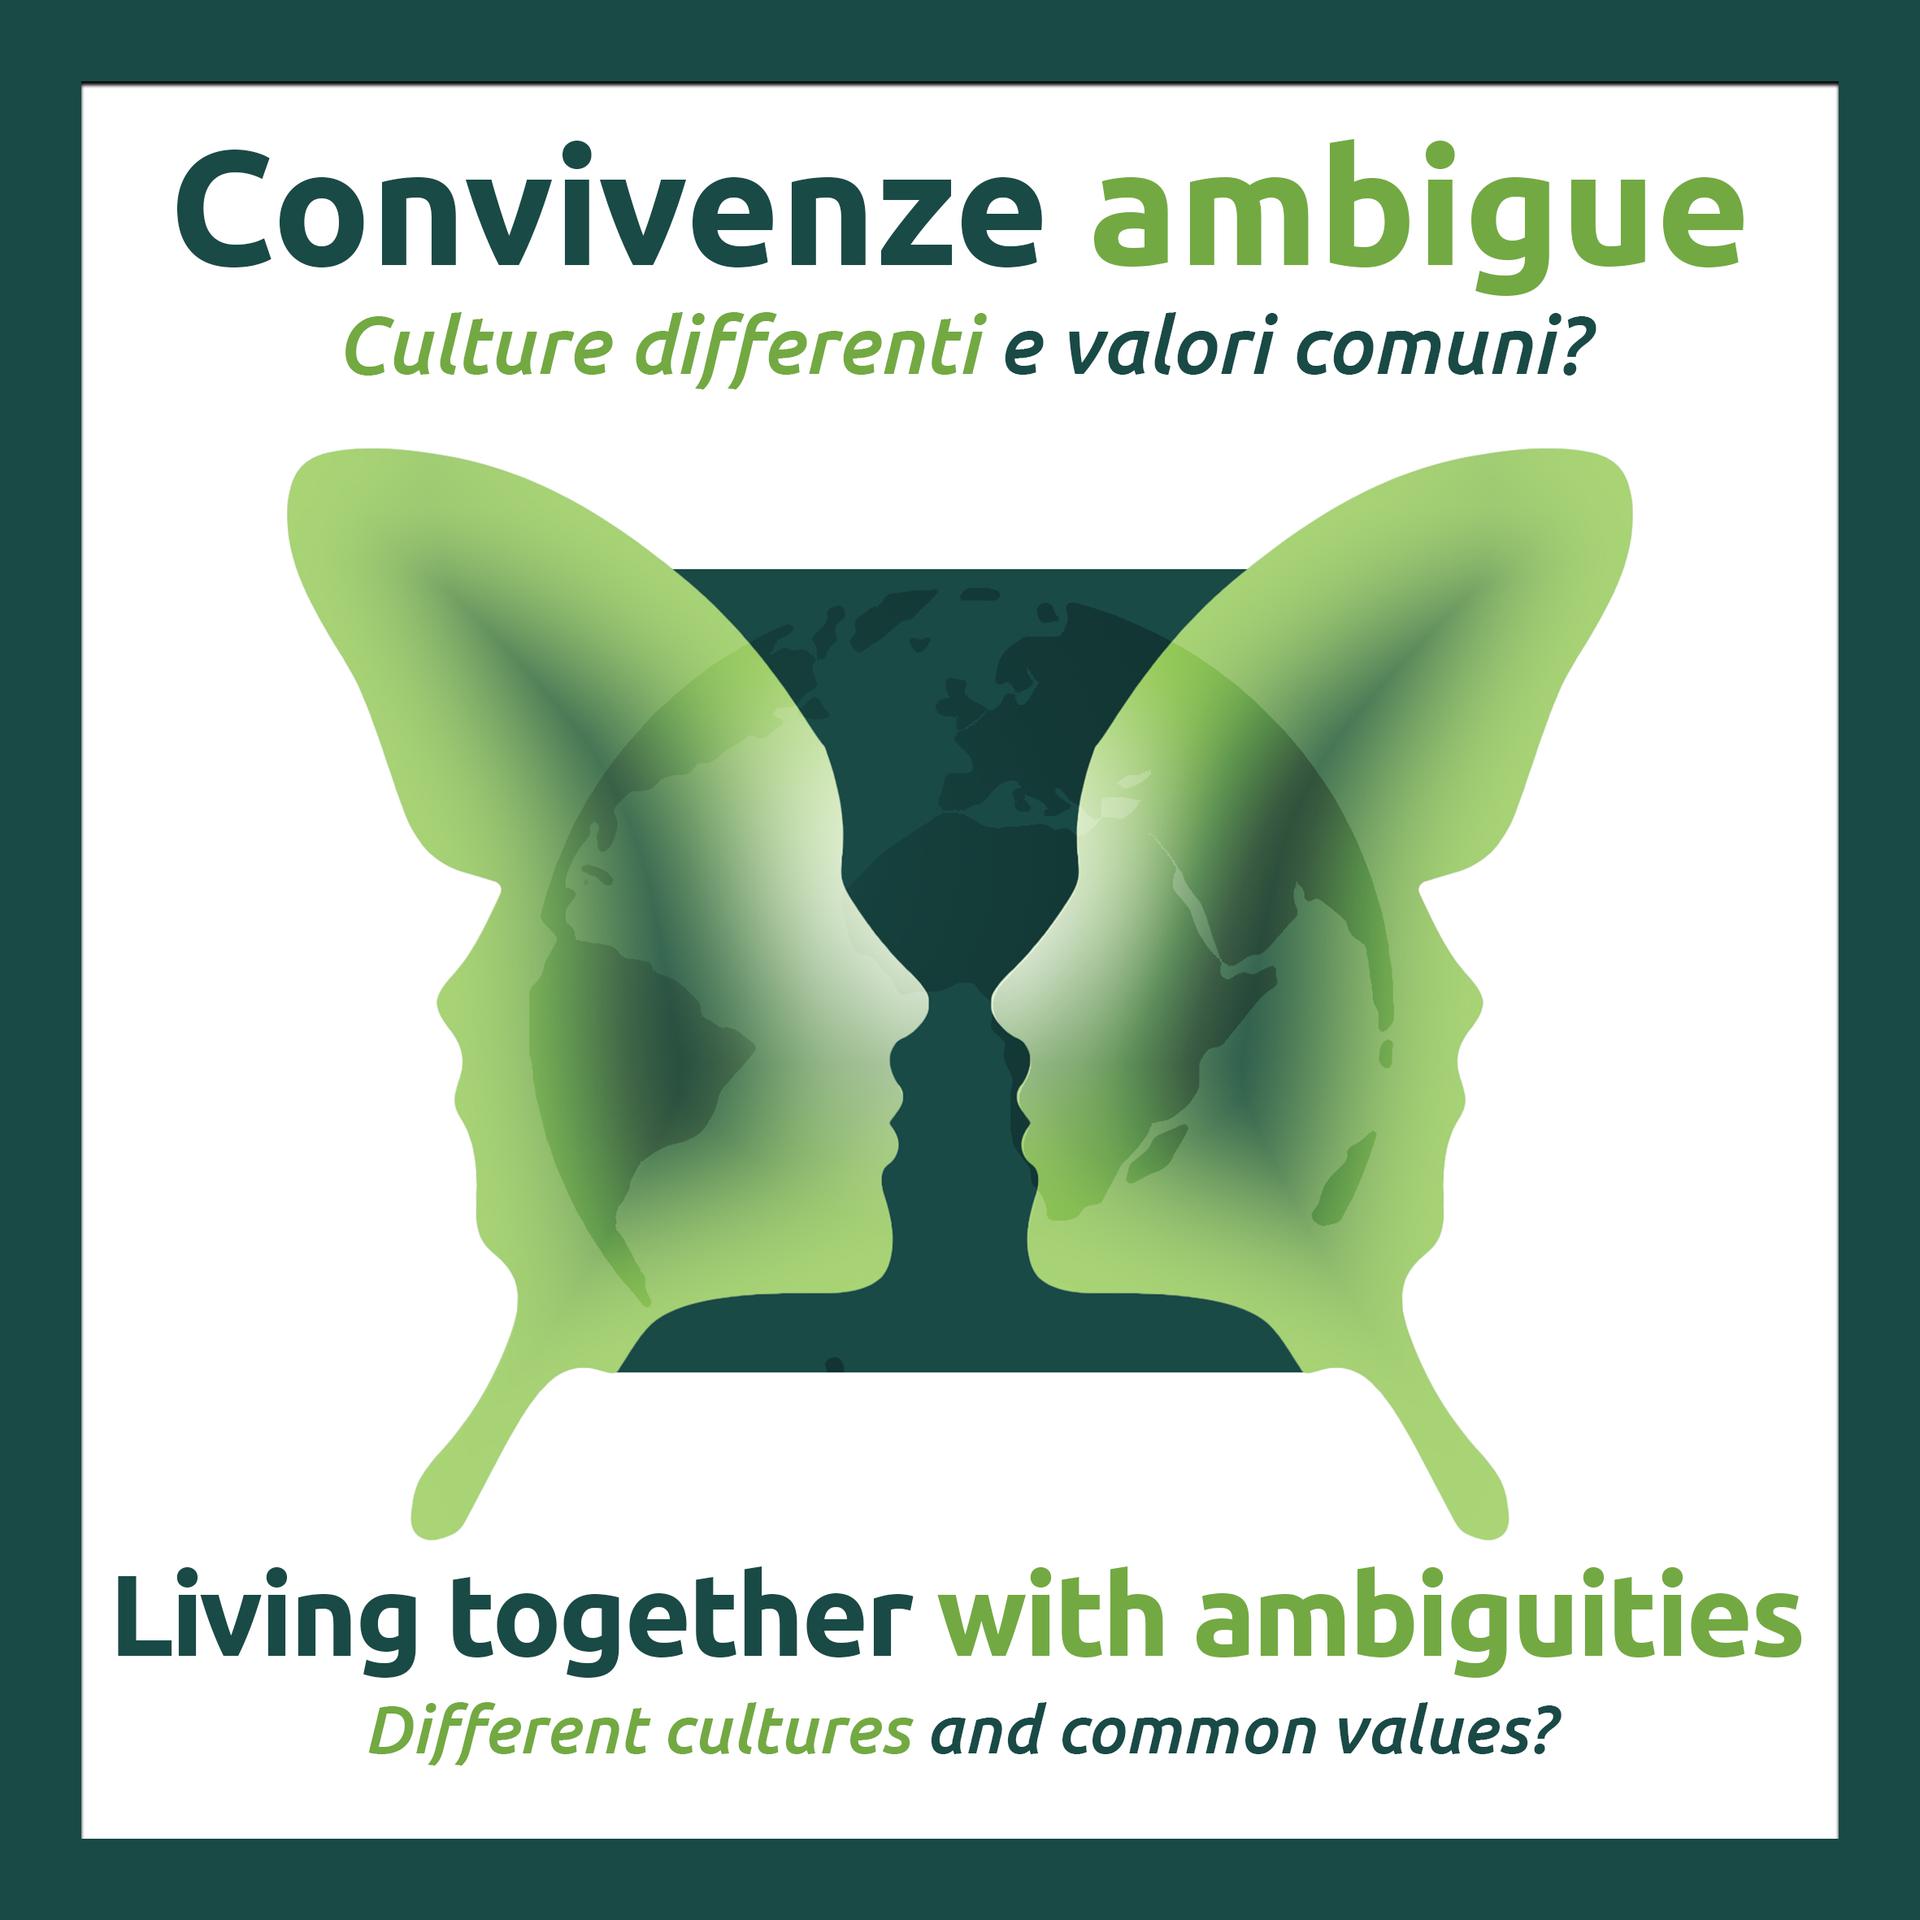 “CONVIVENZE AMBIGUE - Culture differenti e valori comuni?”